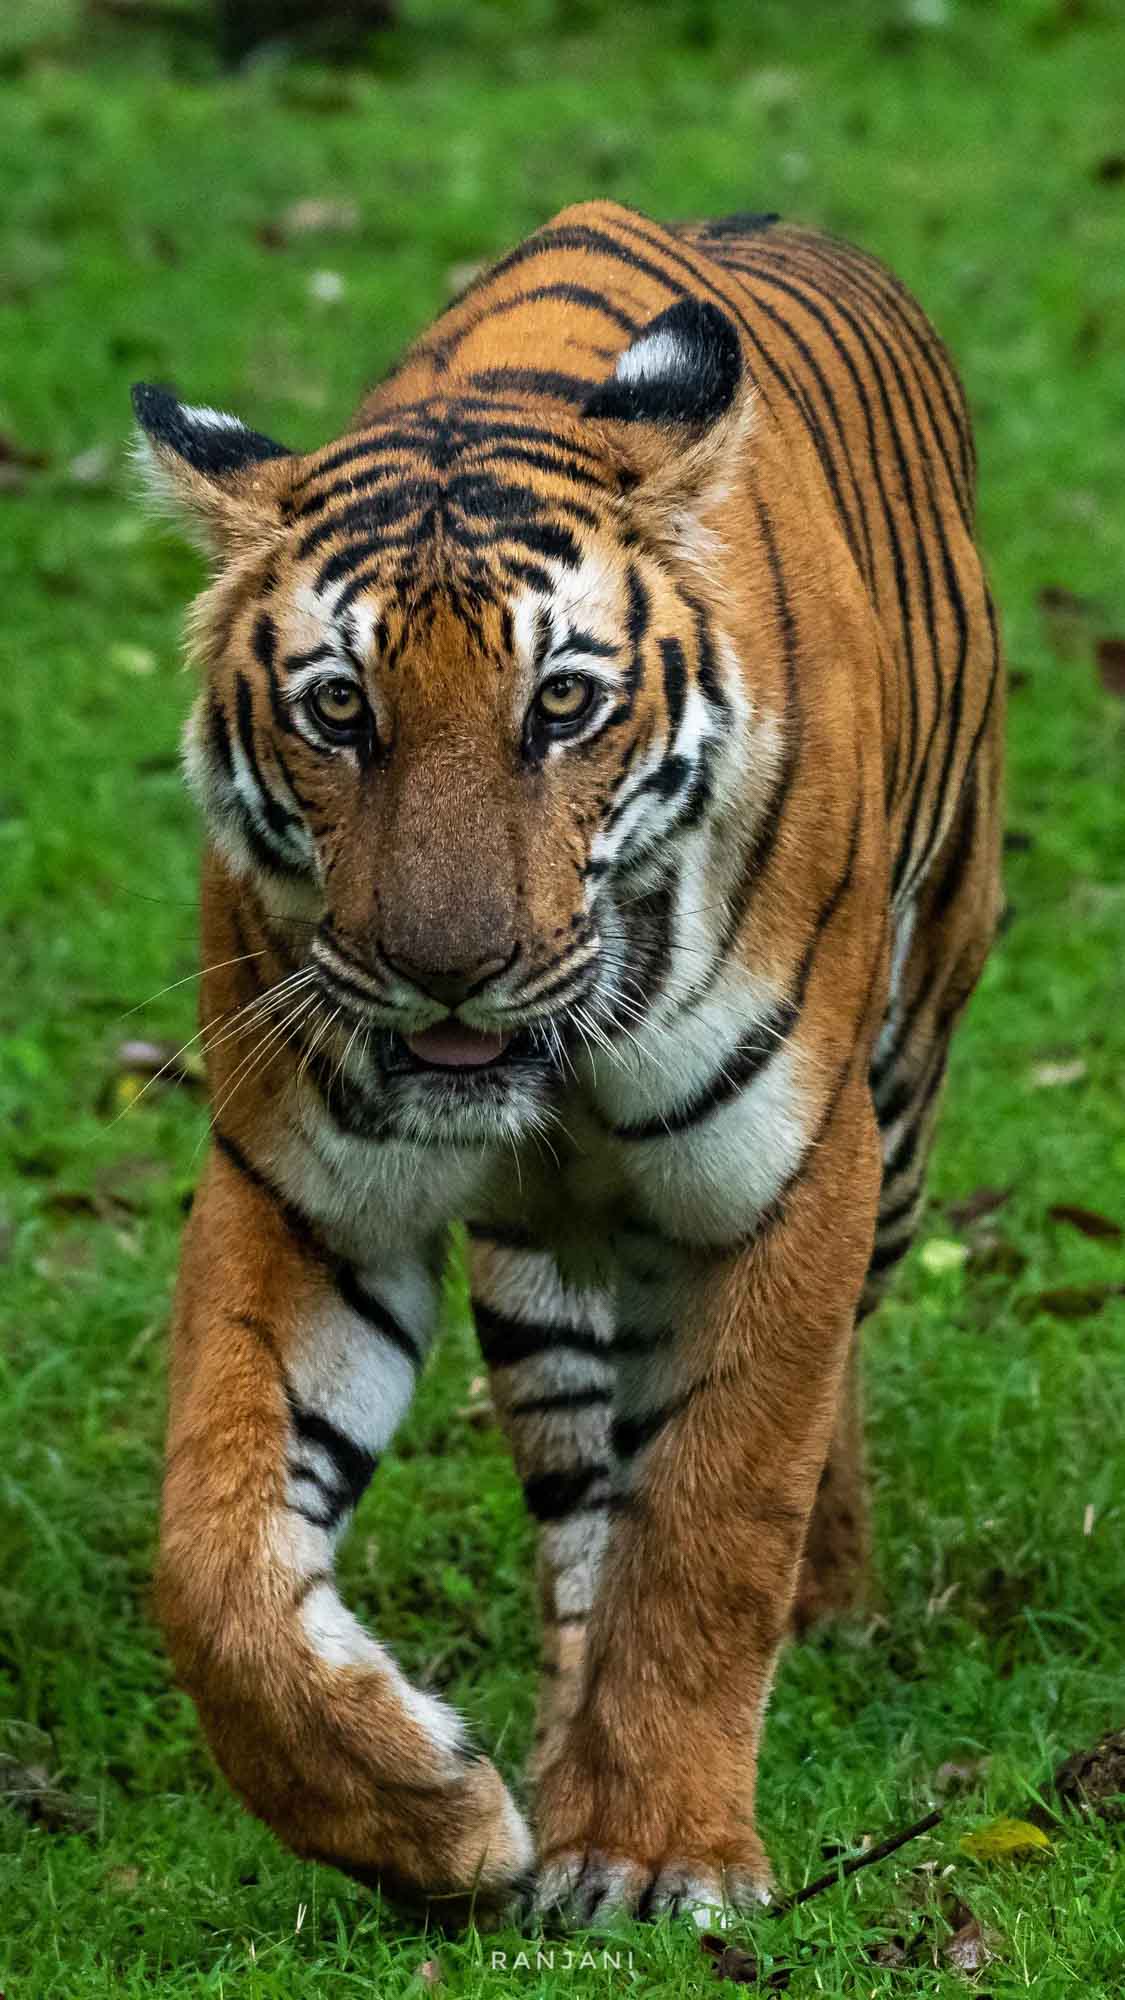 Tiger, Kabini